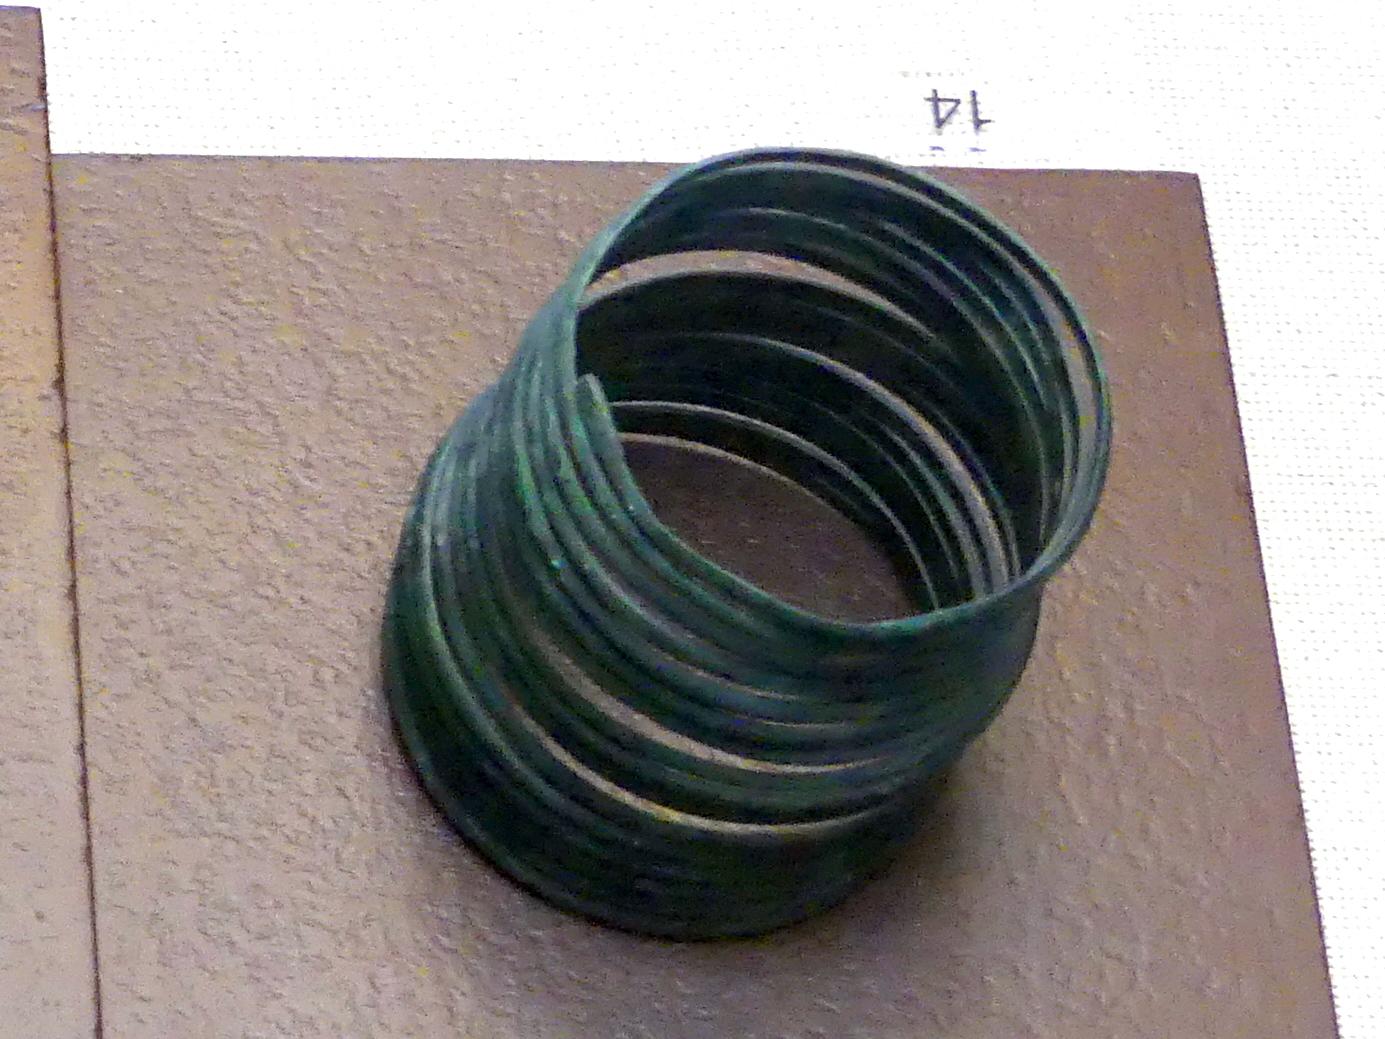 Armspirale, Mittlere Bronzezeit, 3000 - 1300 v. Chr., Bild 2/3